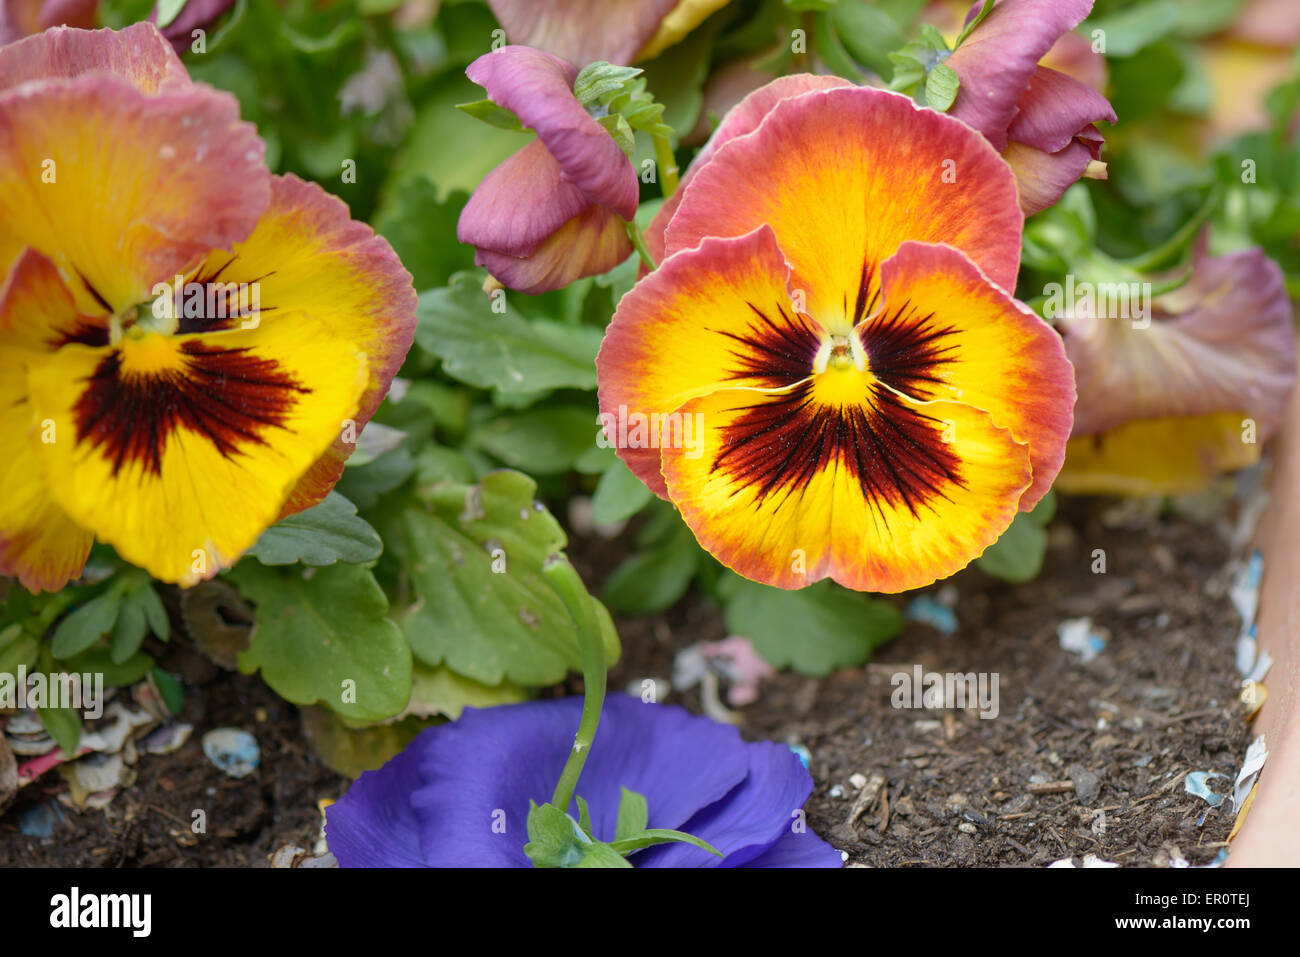 Fleur violette de pensée avec des pétales jaune et rouge Photo Stock - Alamy